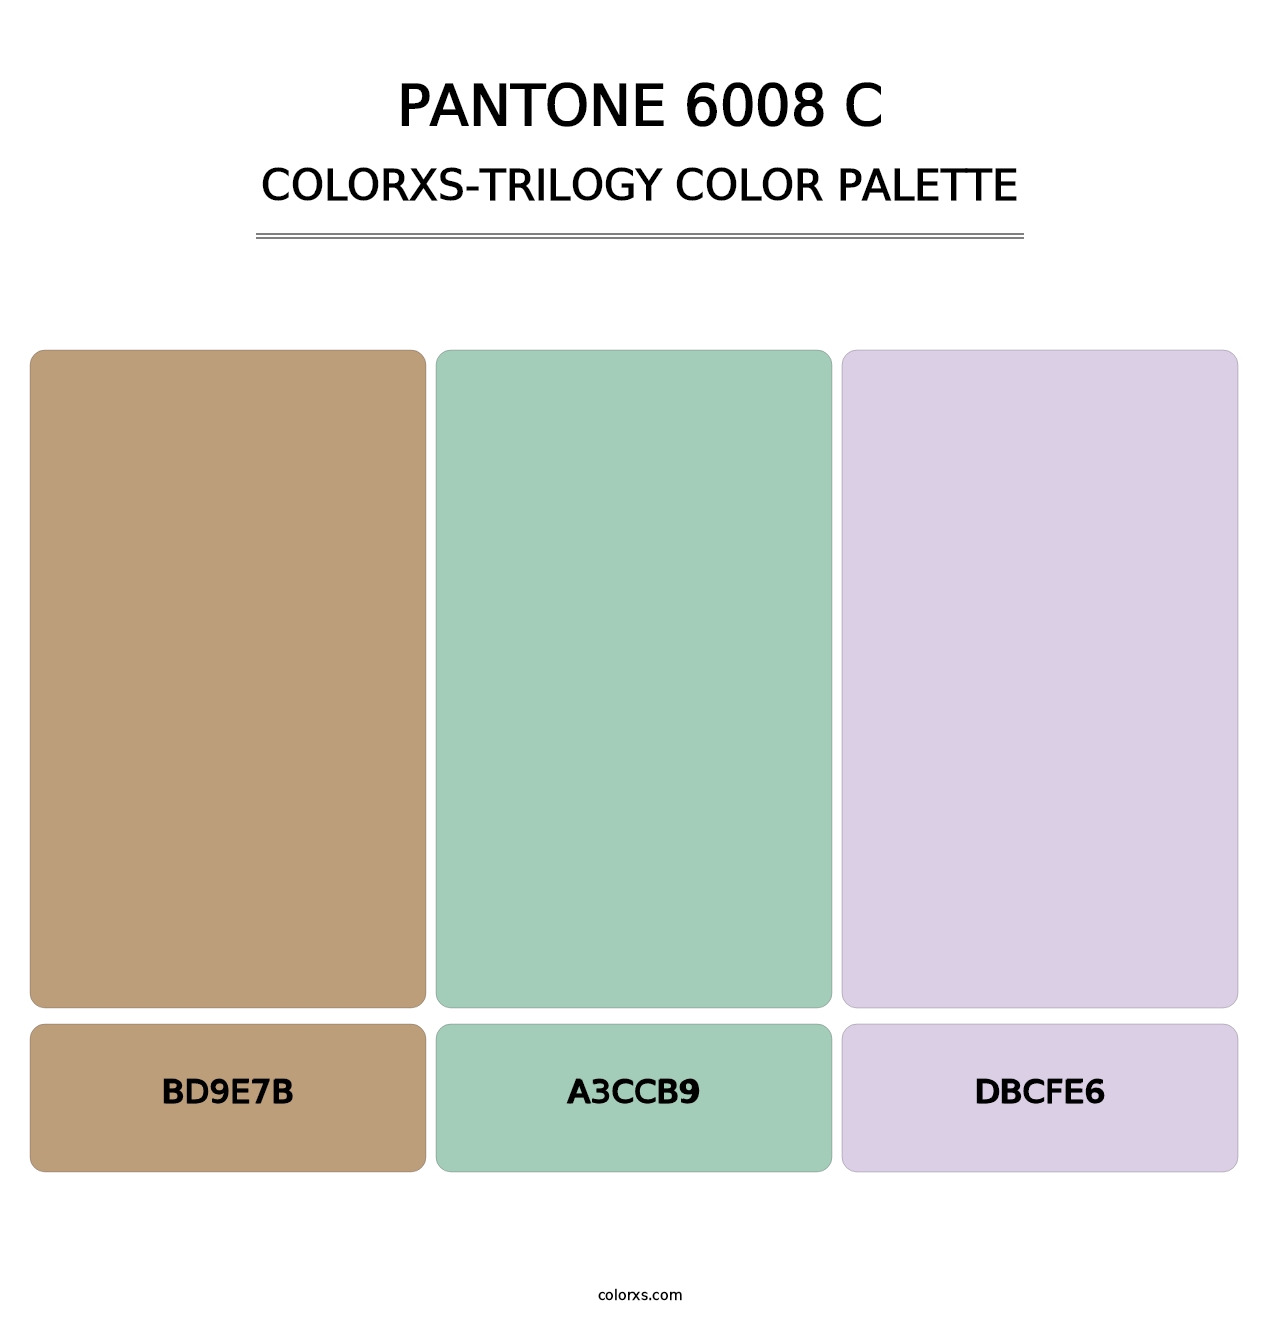 PANTONE 6008 C - Colorxs Trilogy Palette